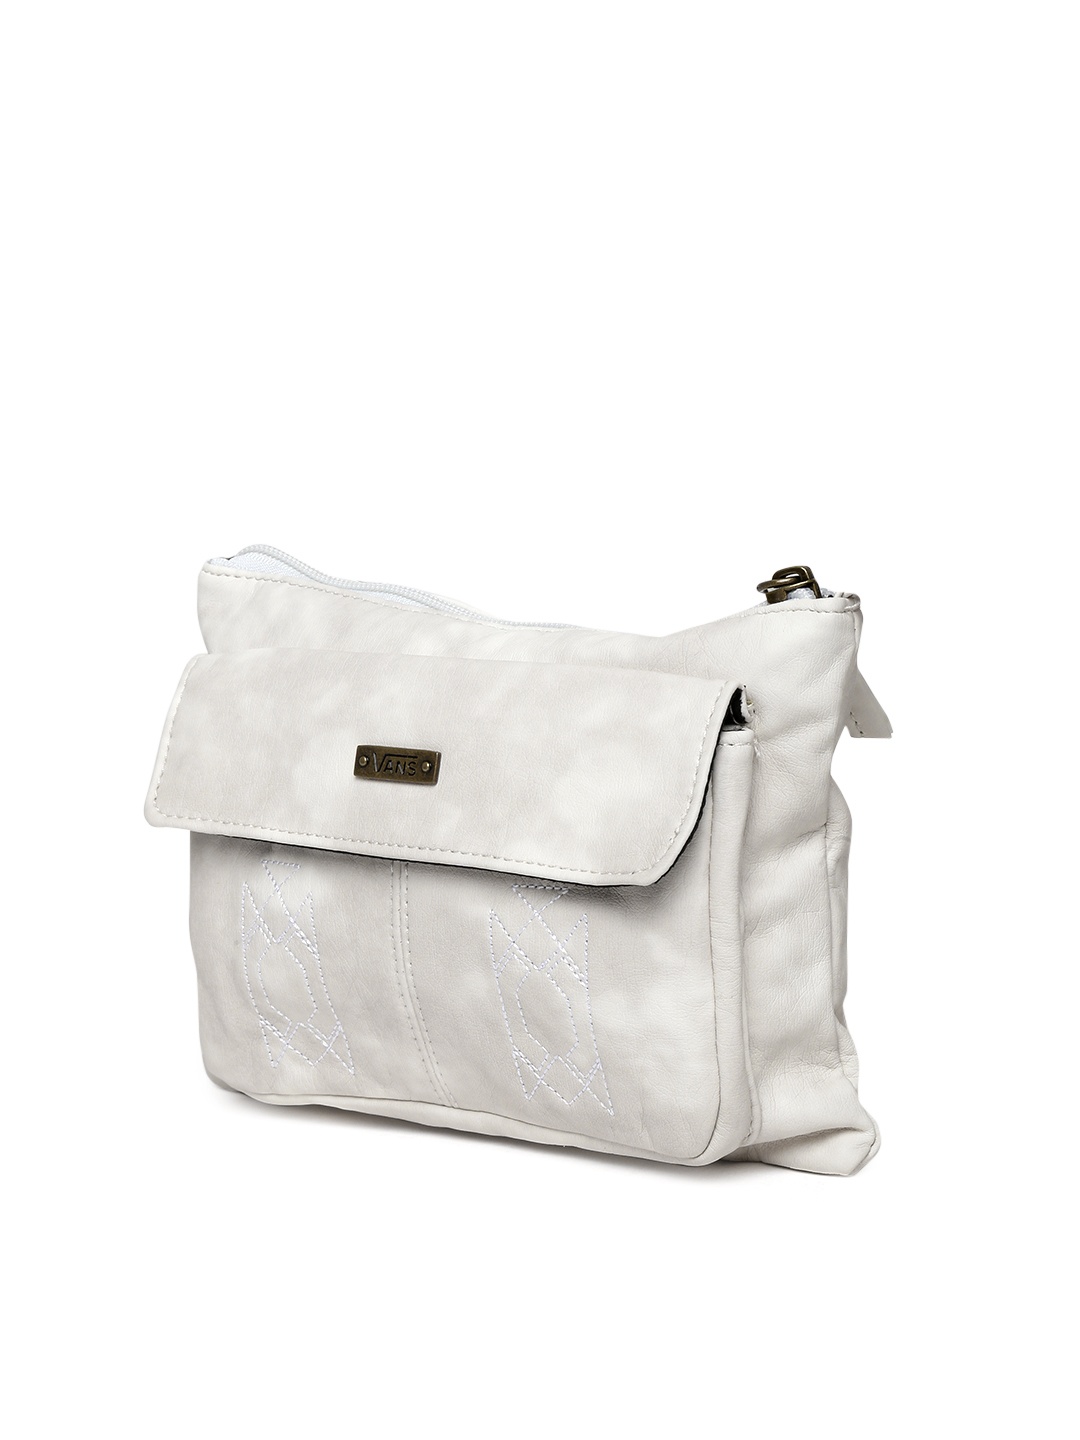 Myntra Vans Off-White Sling Bag 740350 | Buy Myntra Vans Handbags at best price online. All ...